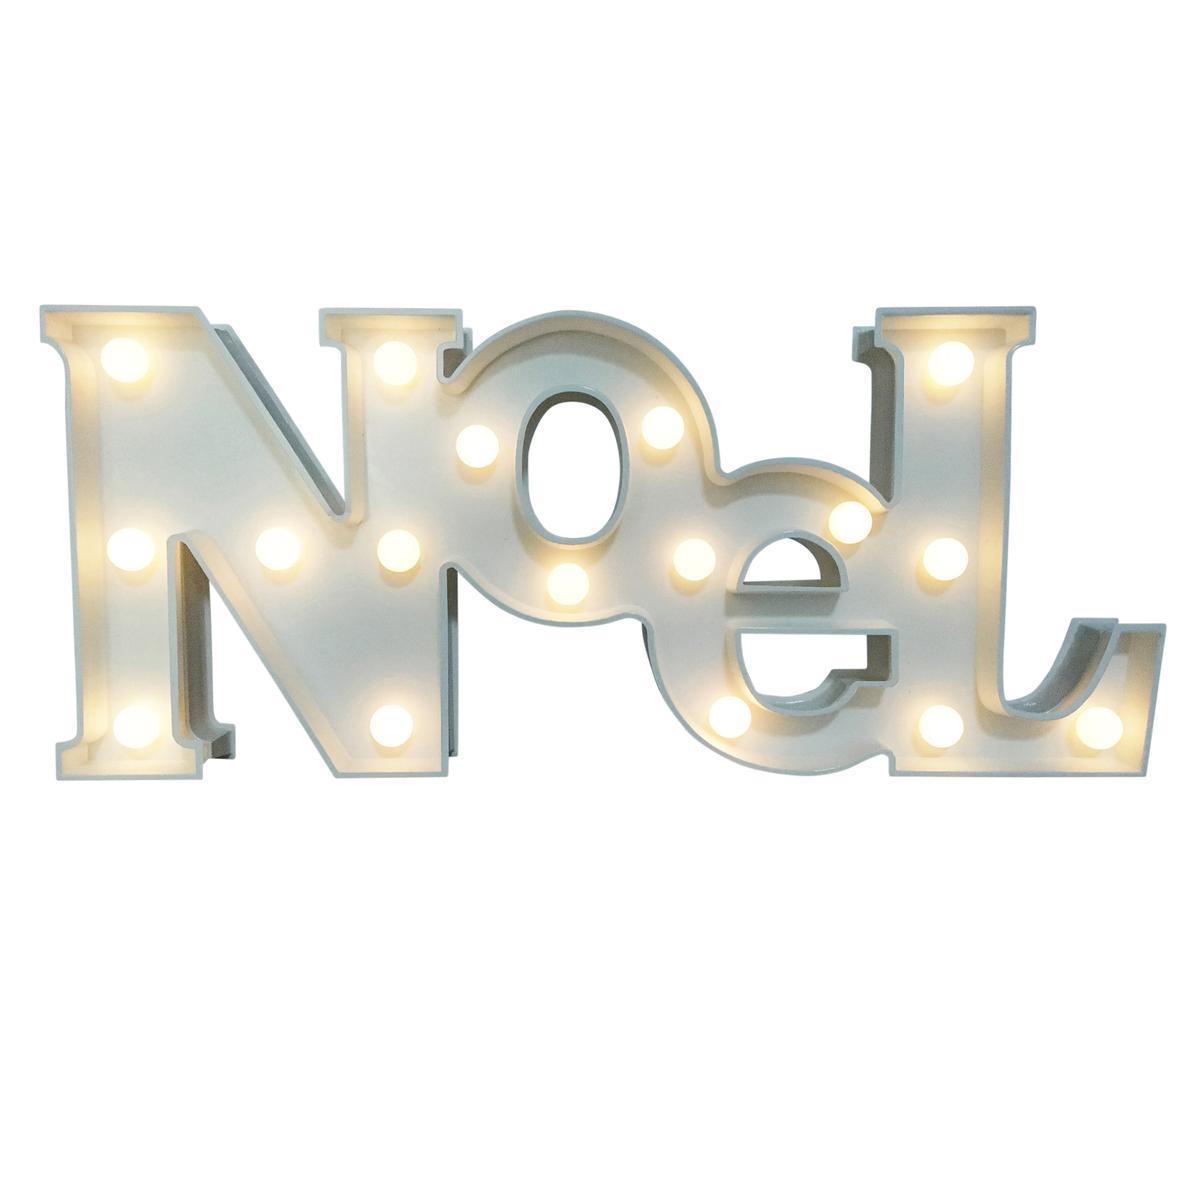 Lettres lumineuses NOEL - Plastique - 49 x 21 cm - Blanc